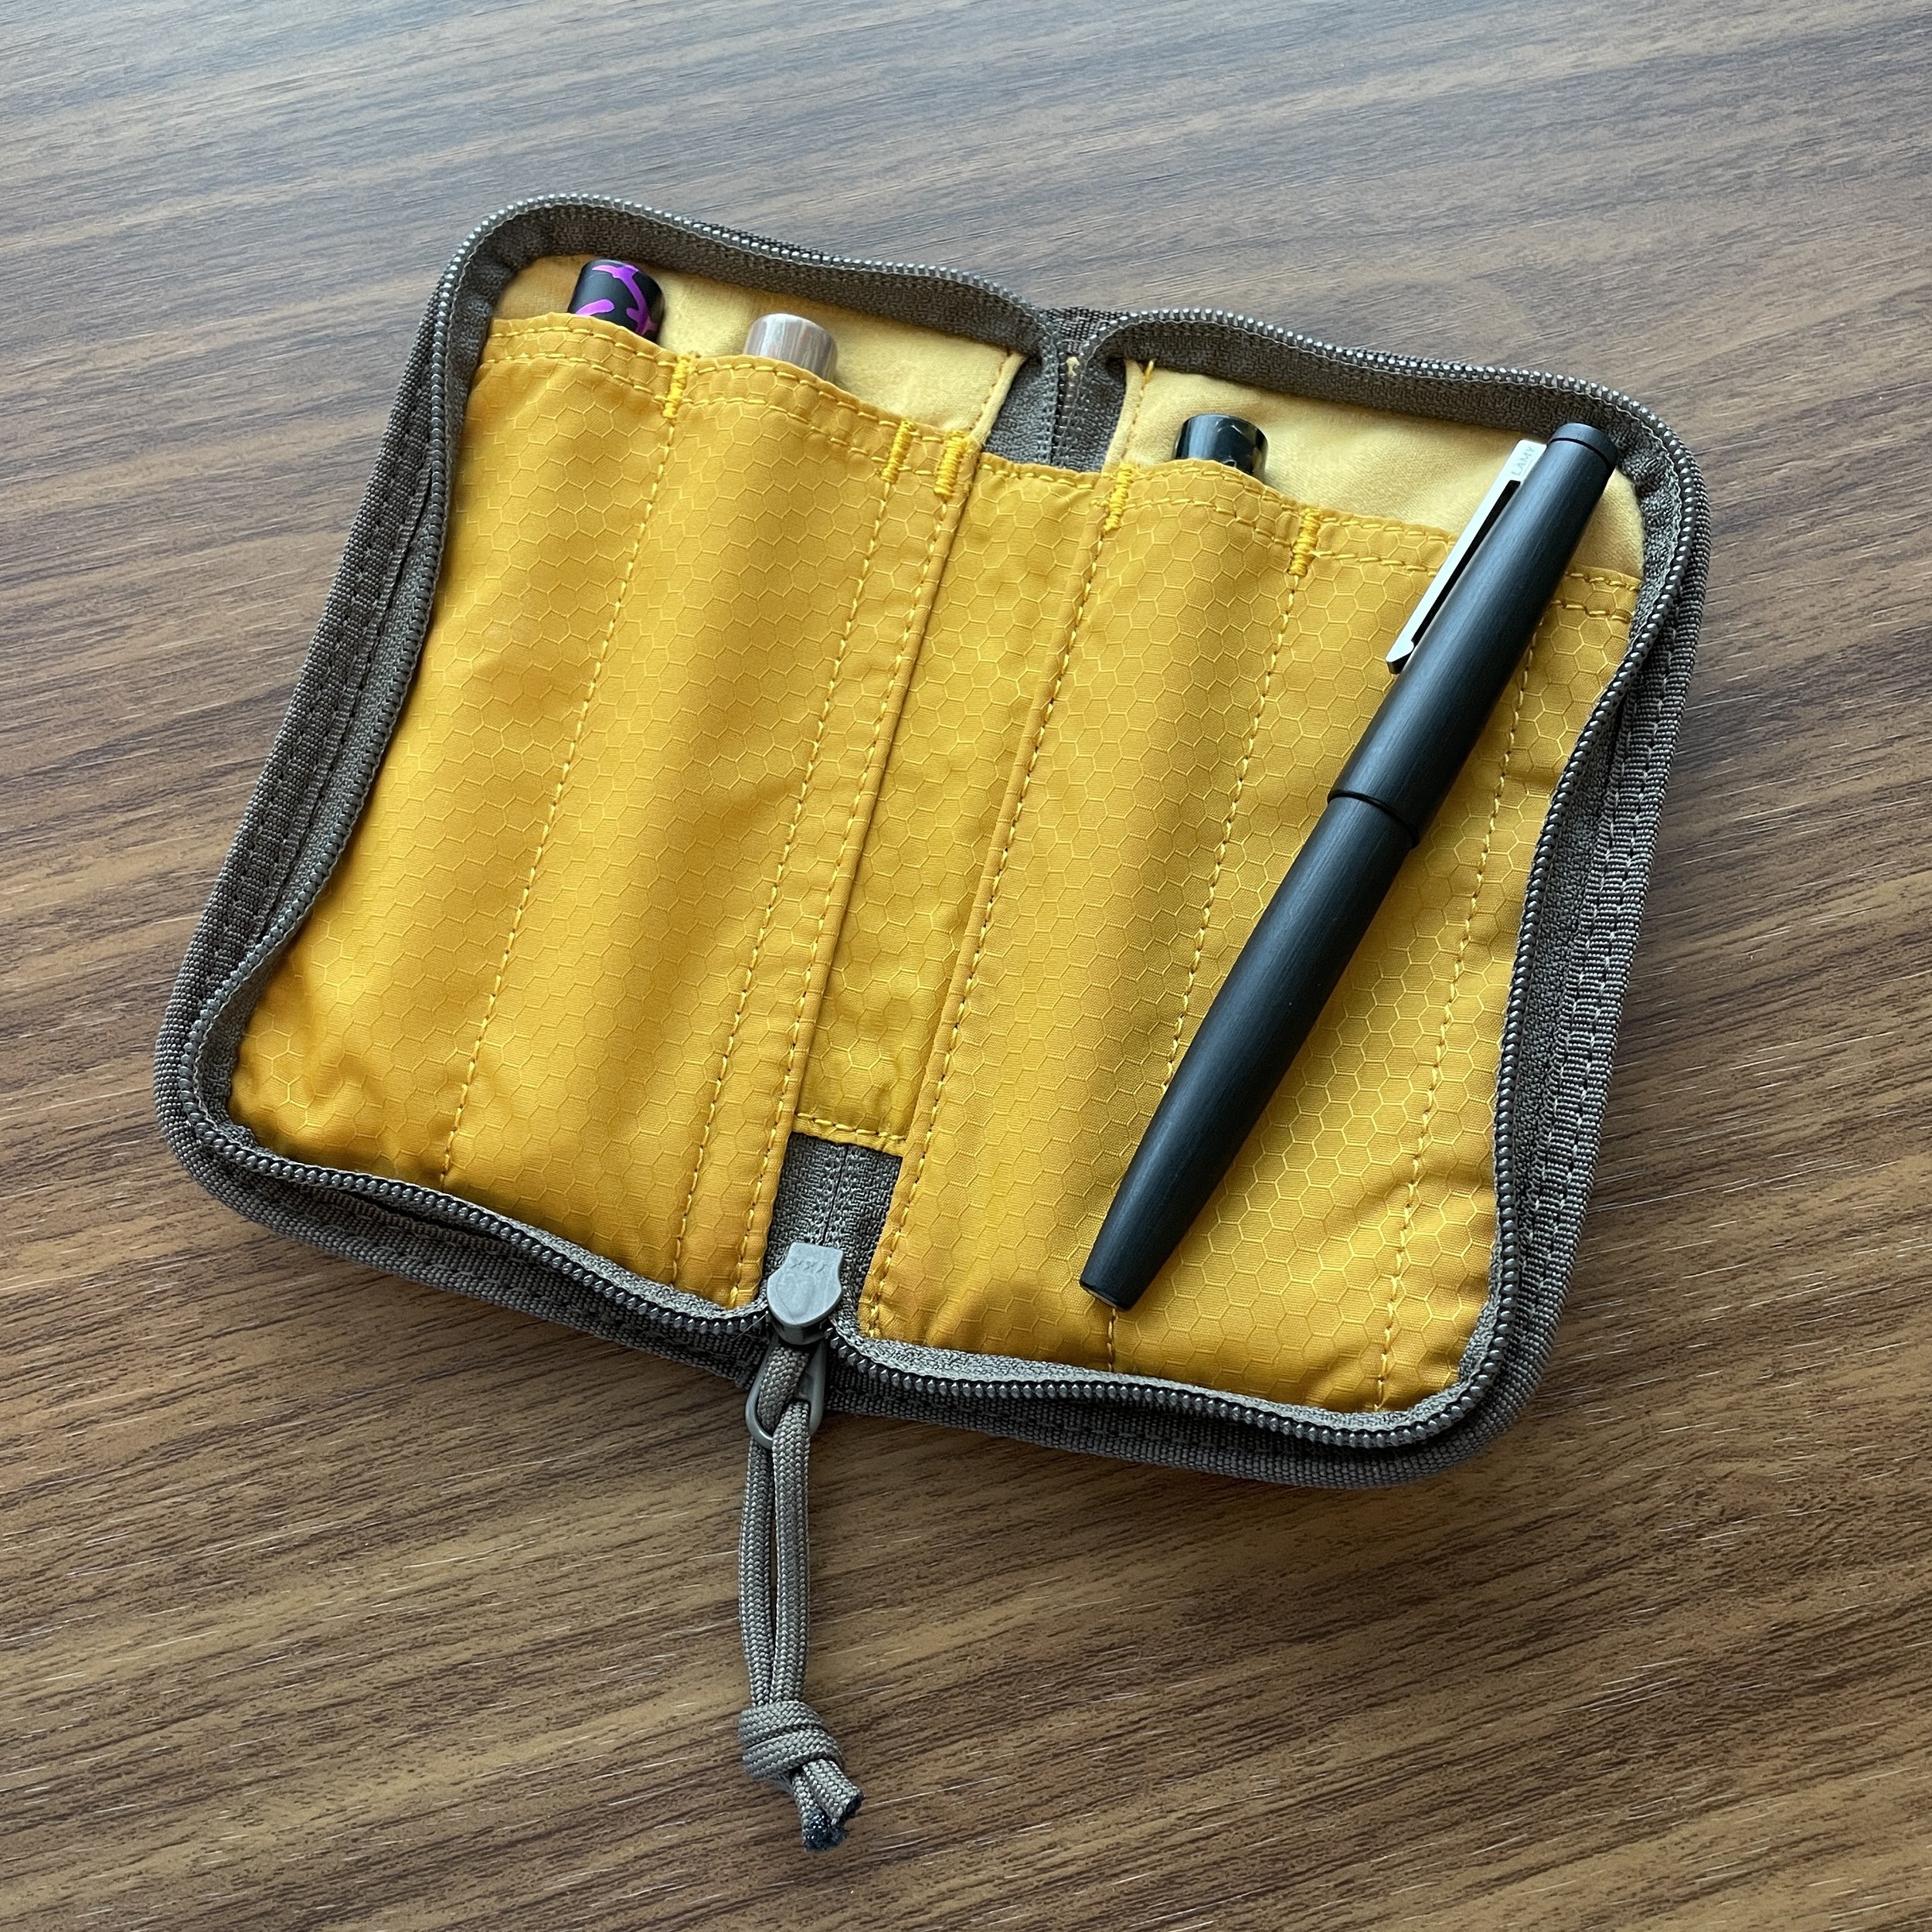 Pen Case Review: Lochby Quattro Four-Pen Case — The Gentleman